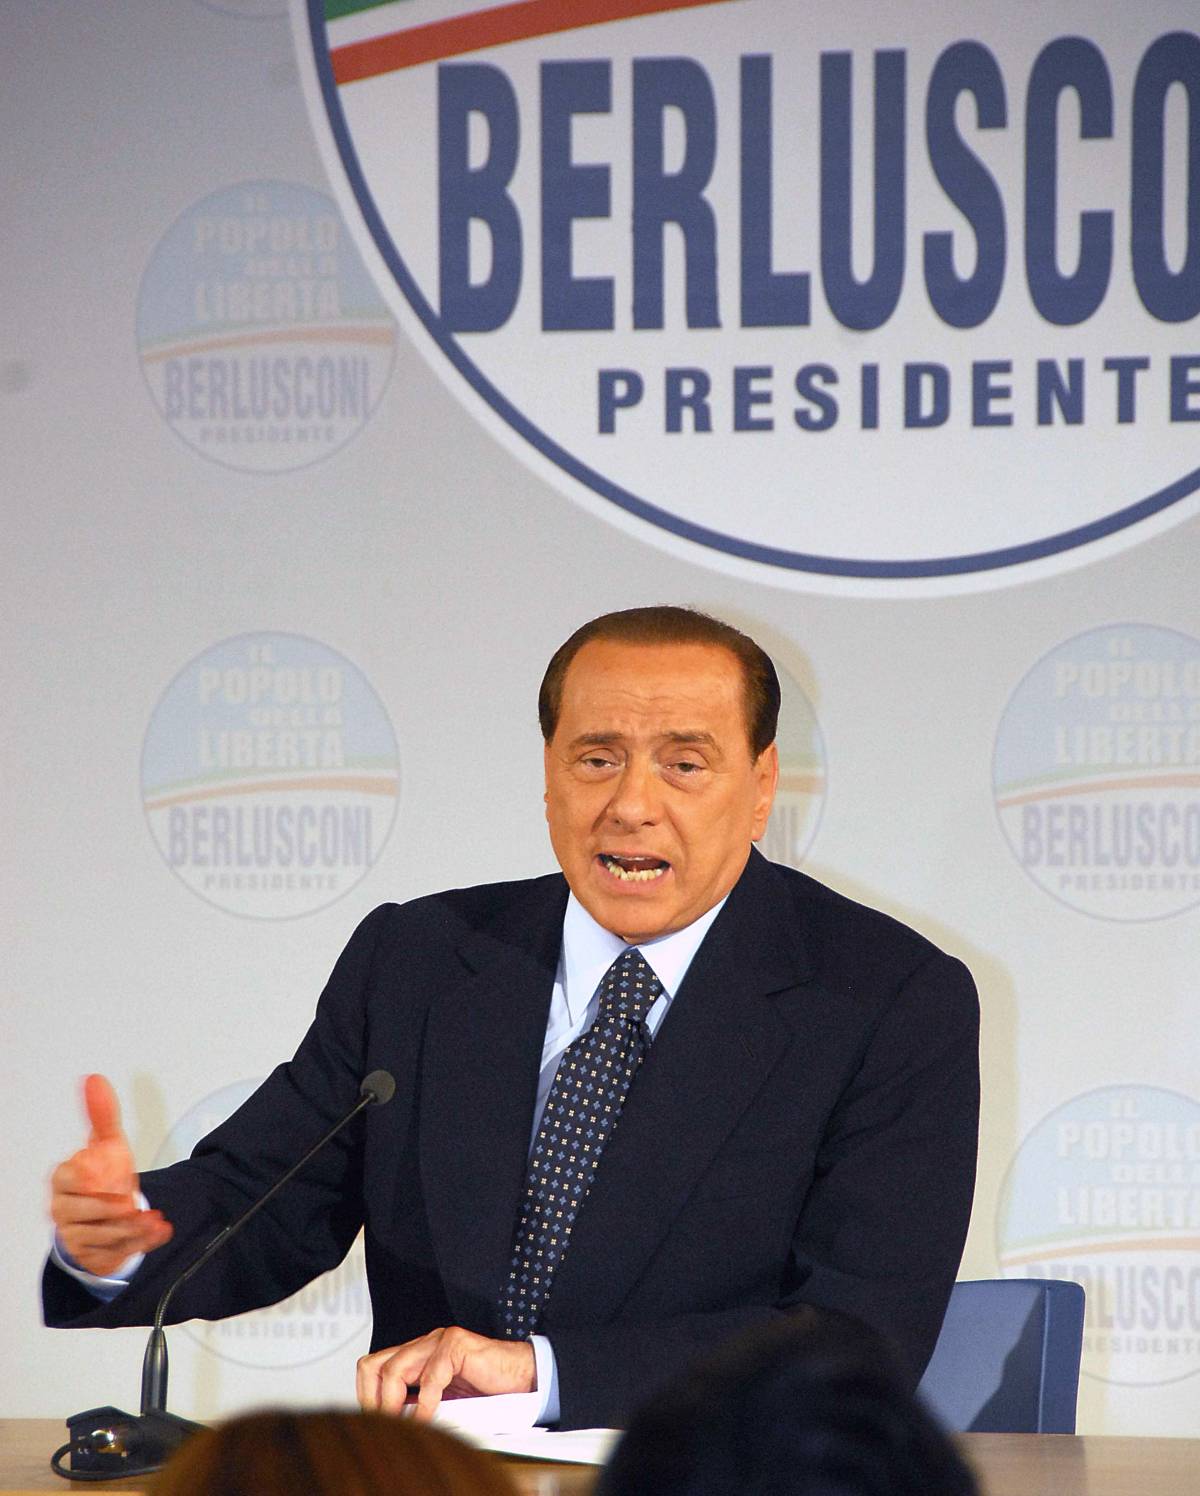 Villa Certosa, Berlusconi: "Toccato il fondo" 
Nuovo colpo di scena: "Veronica ha l'amante"